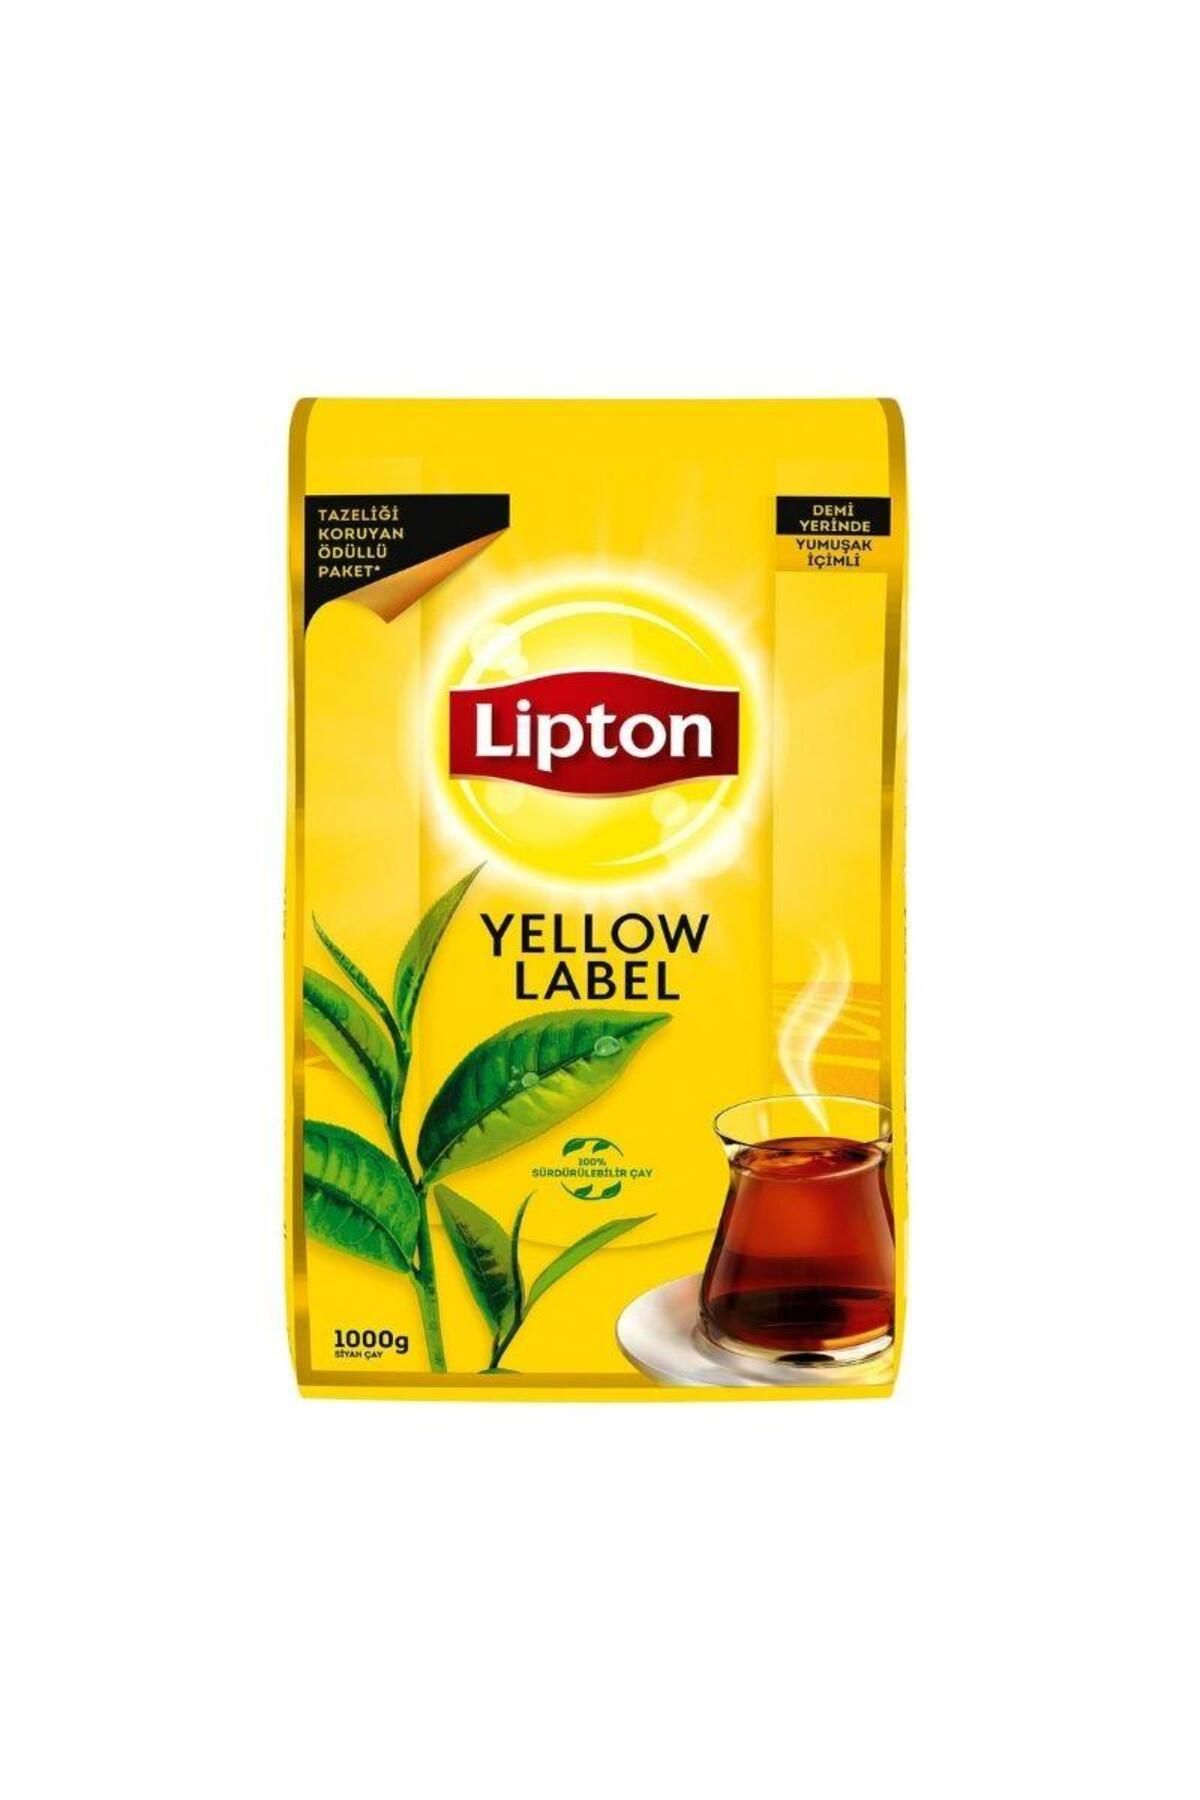 Lipton LİPTON - YELLOW LABEL 1KG - 1 PAKET